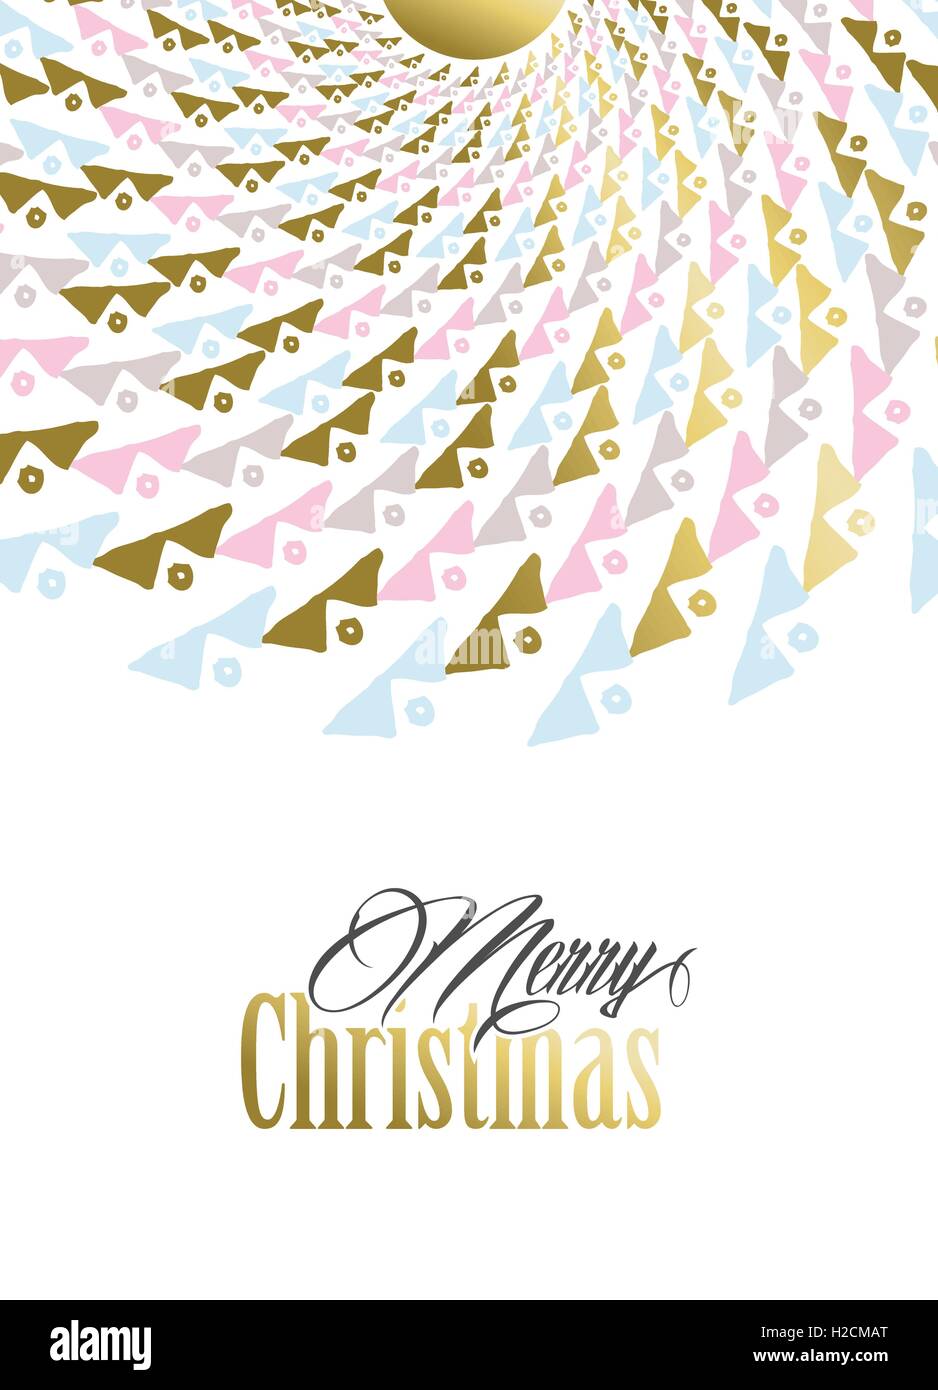 Joyeux Noël en or de conception et des couleurs pastel avec tribal art mandala pour holiday Greeting card, poster, ou invitation. EPS10 Illustration de Vecteur